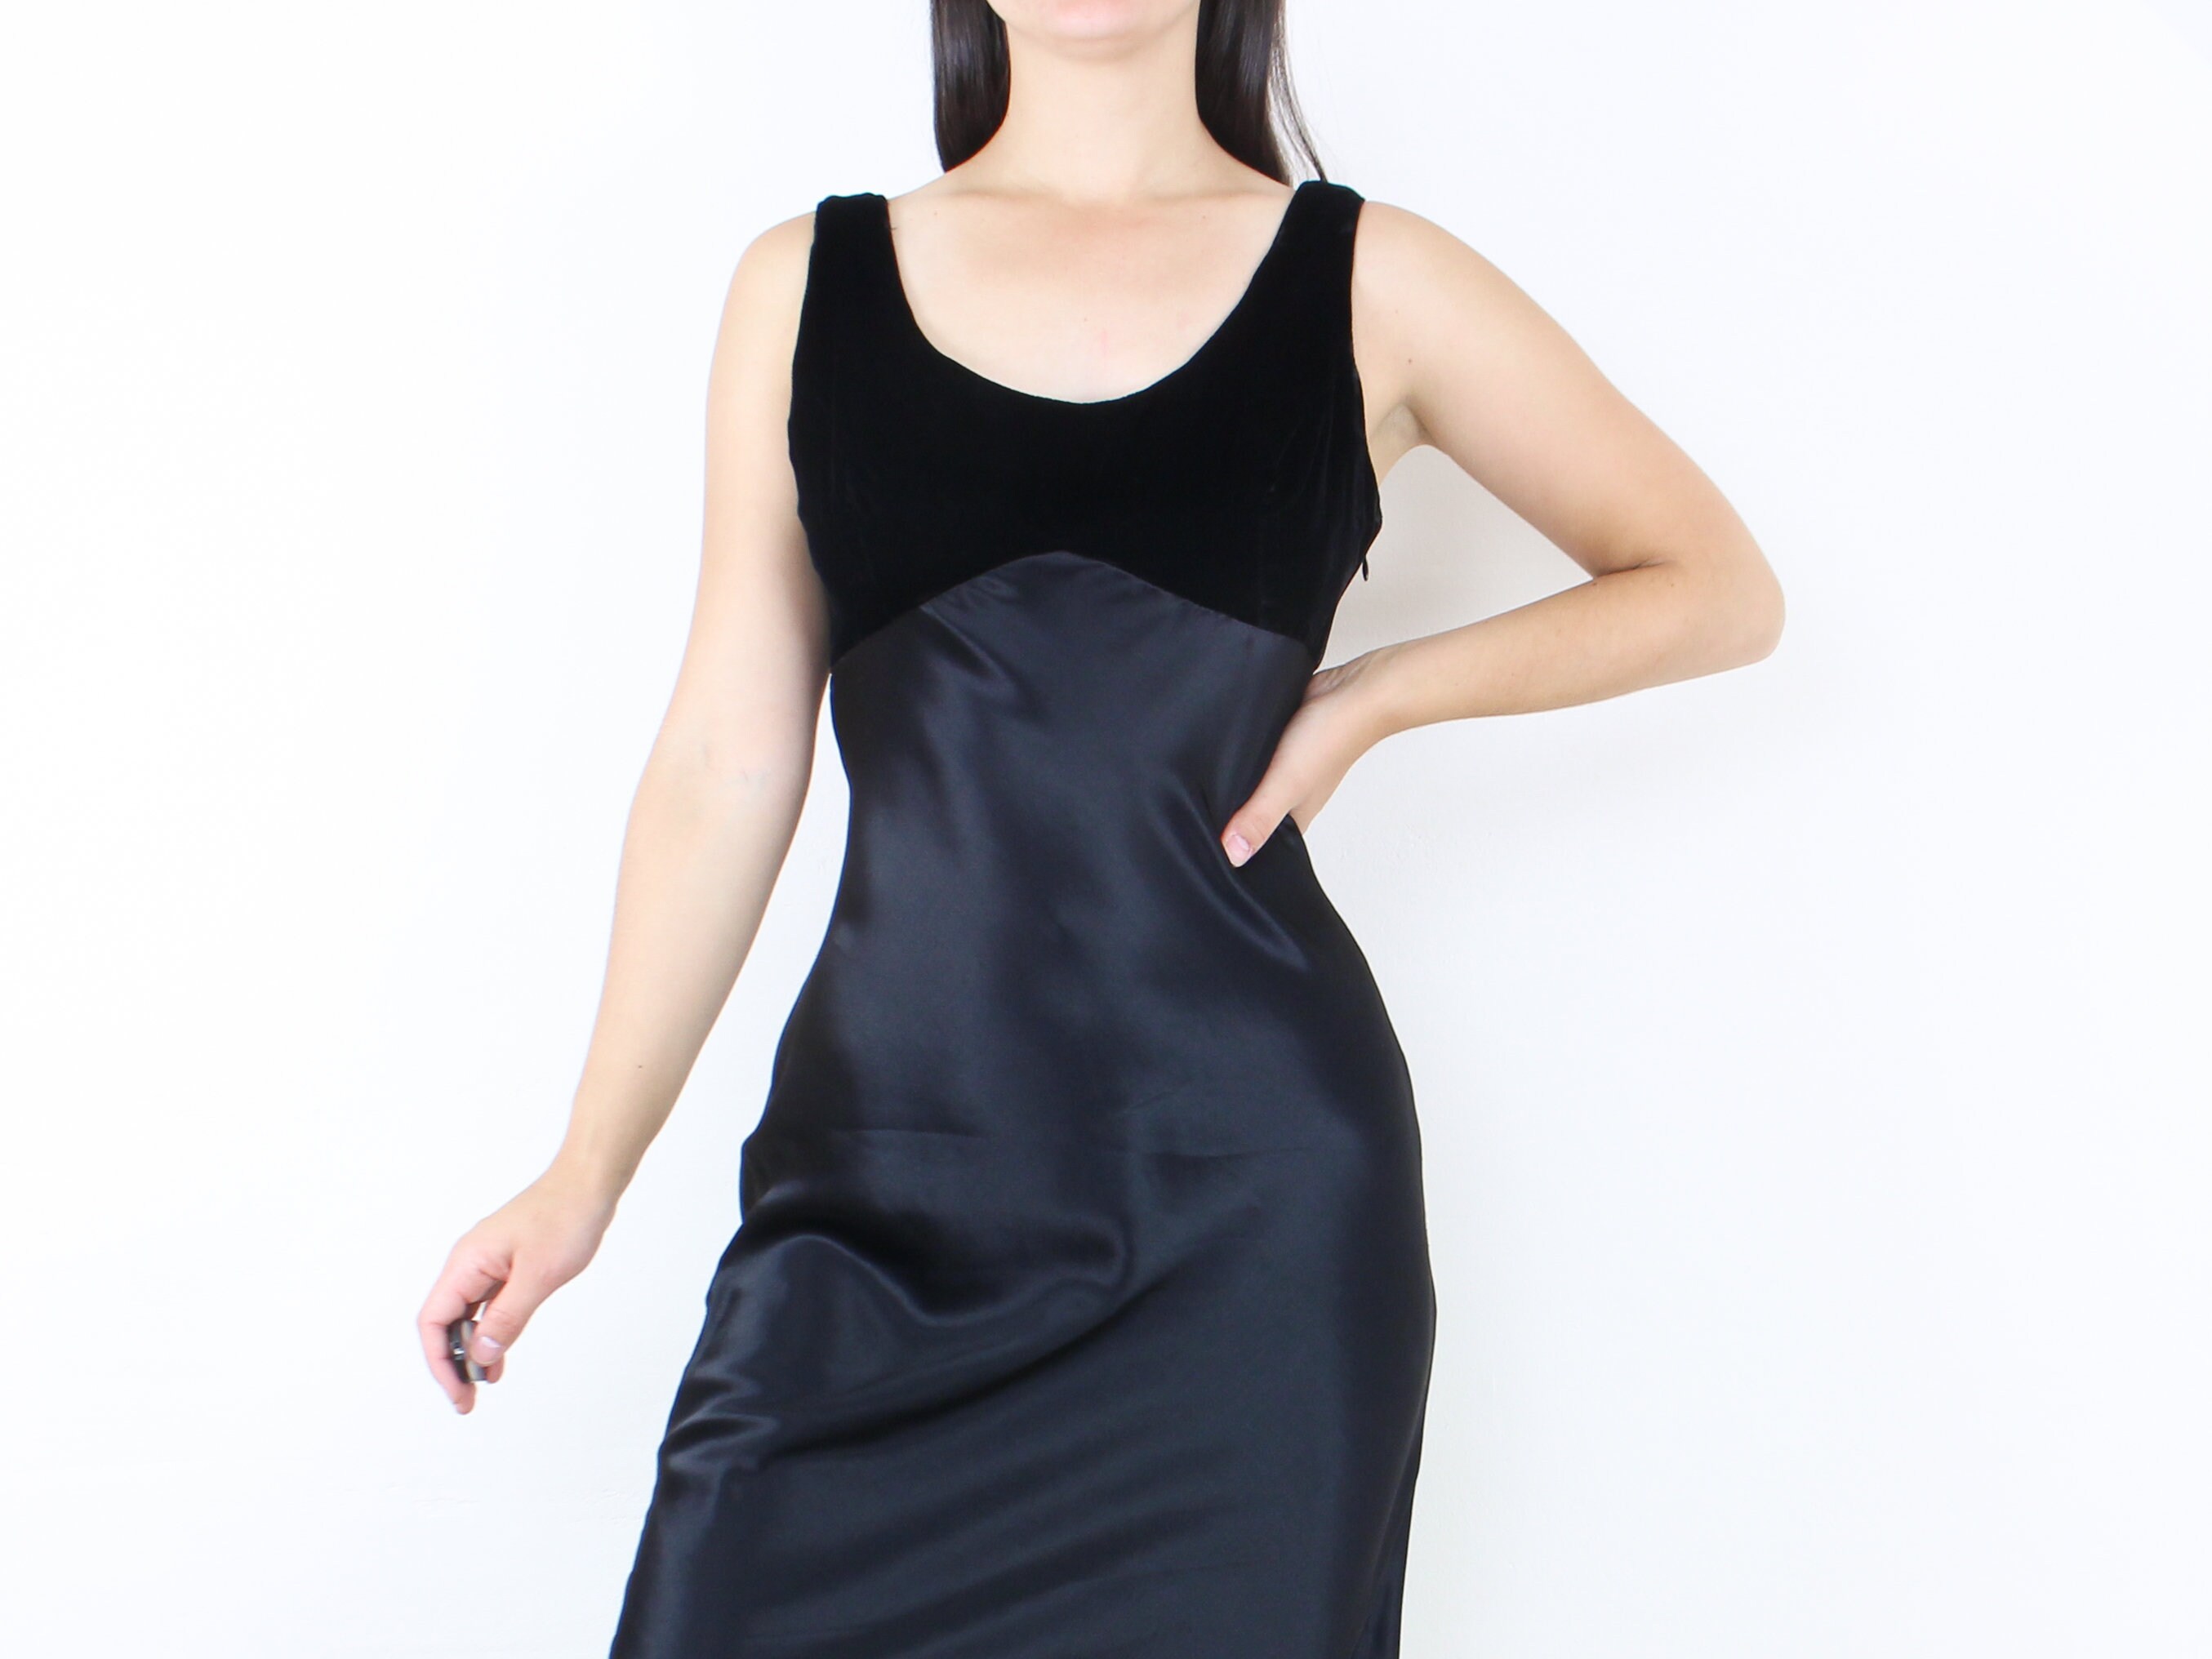 Bias Cut Sleeveless Dress - Prudence Natural Beauty & Fashion